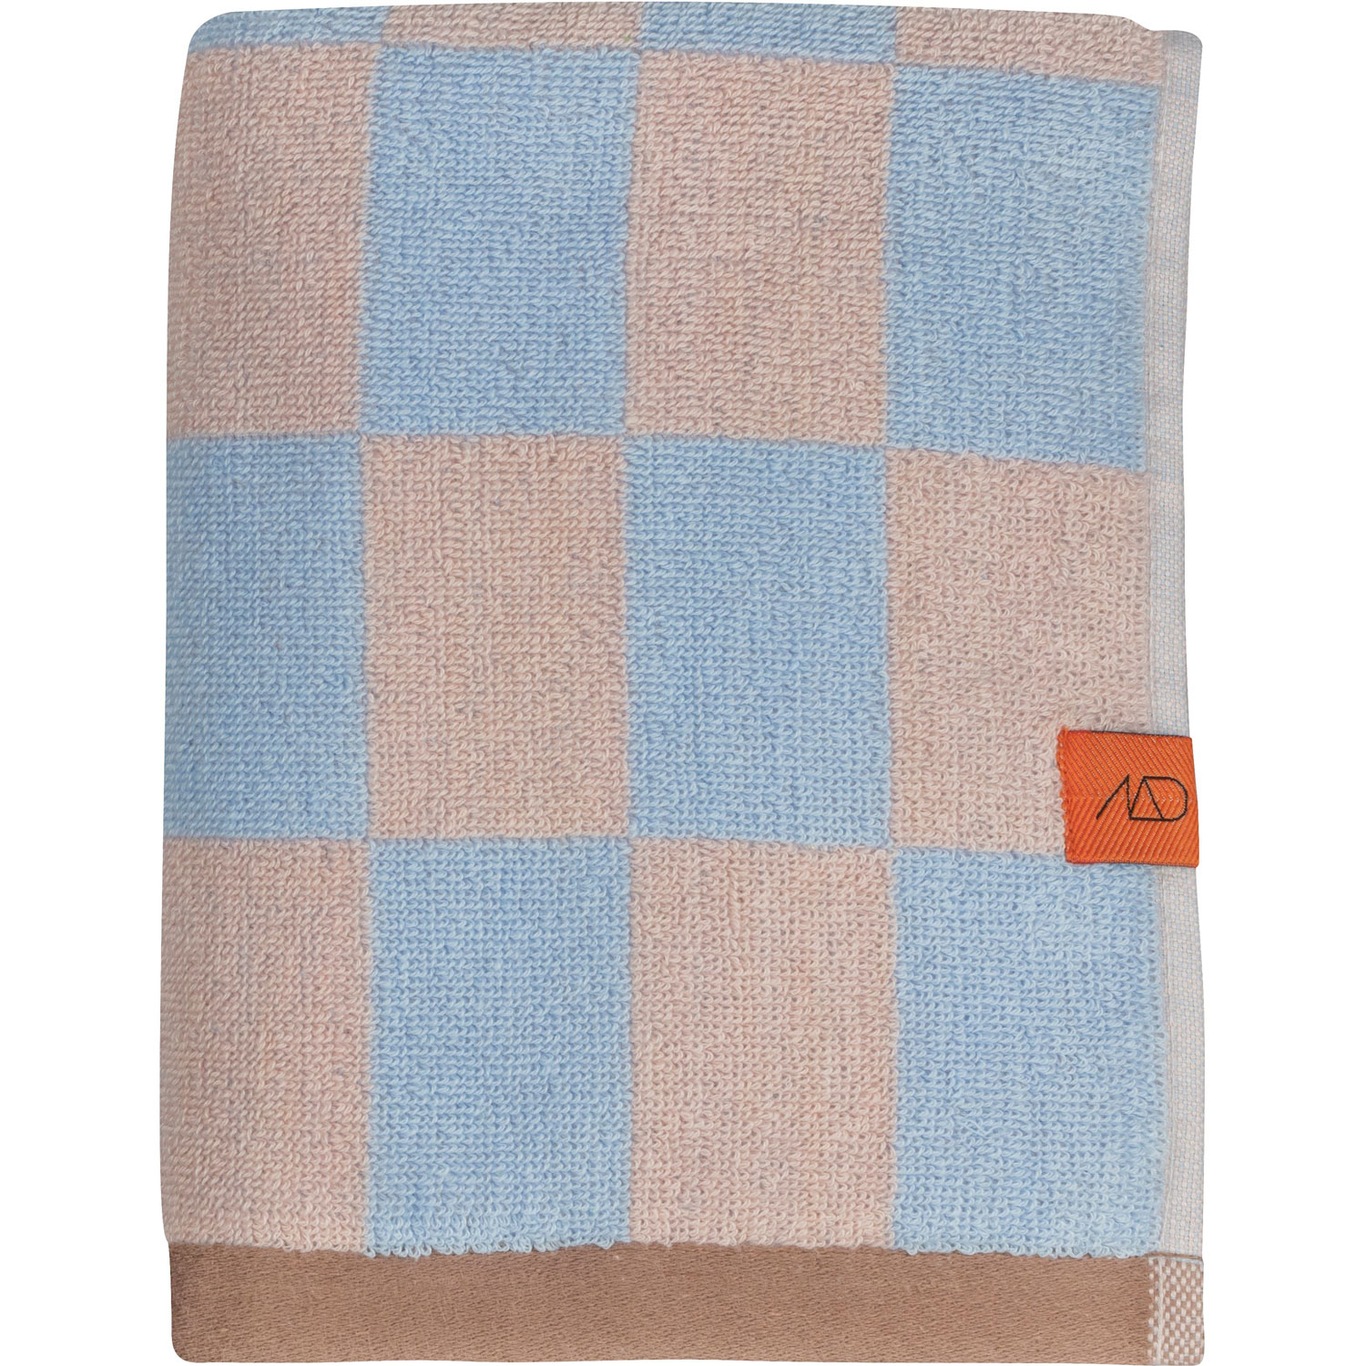 Retro Towel 50x90 cm, Light Blue